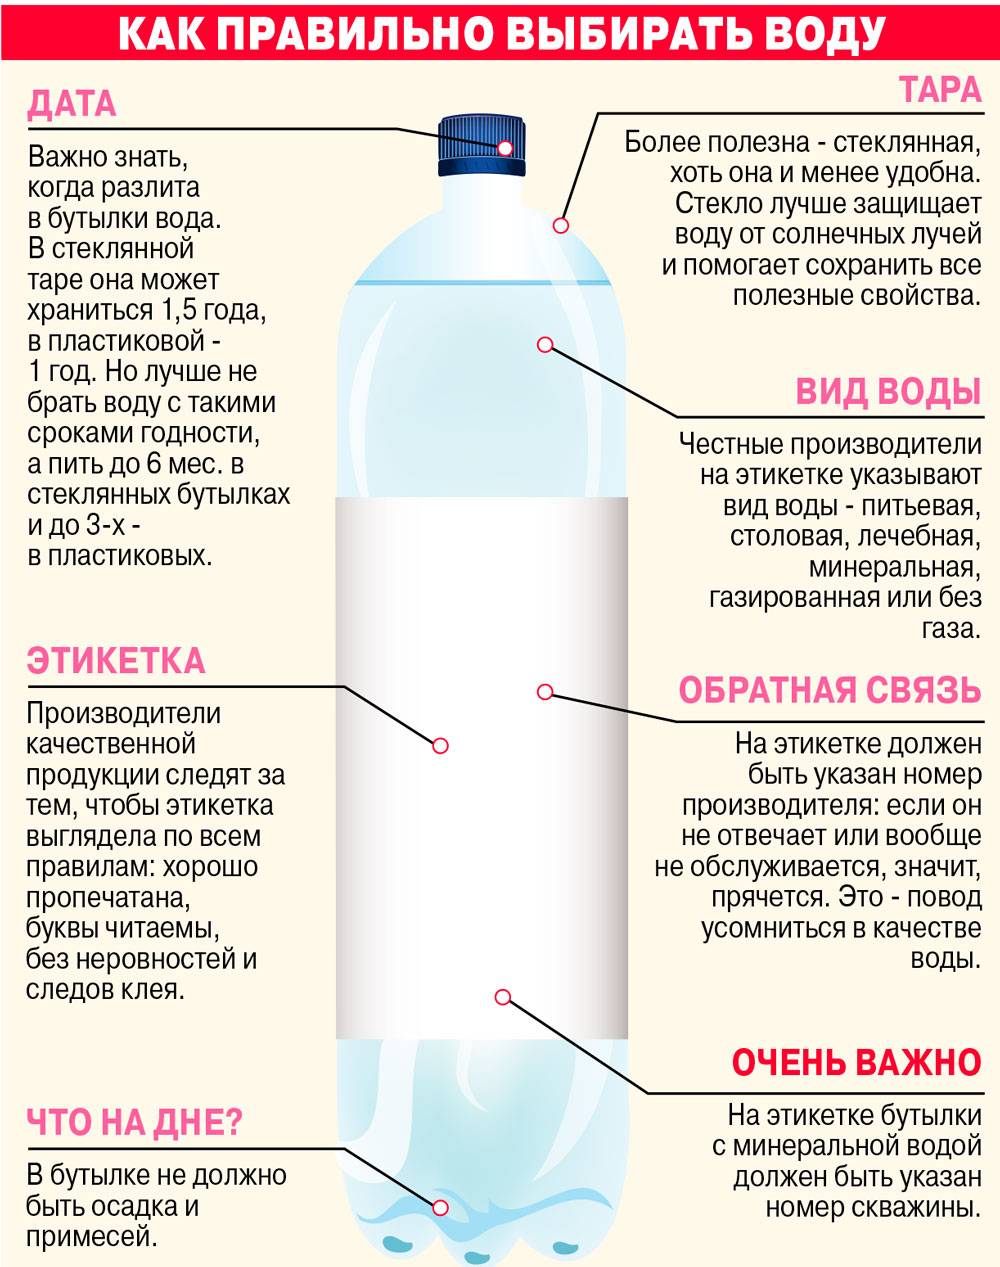 Как похудеть с помощью воды - как правильно и безопасно пить воду | | irksportmol.ru